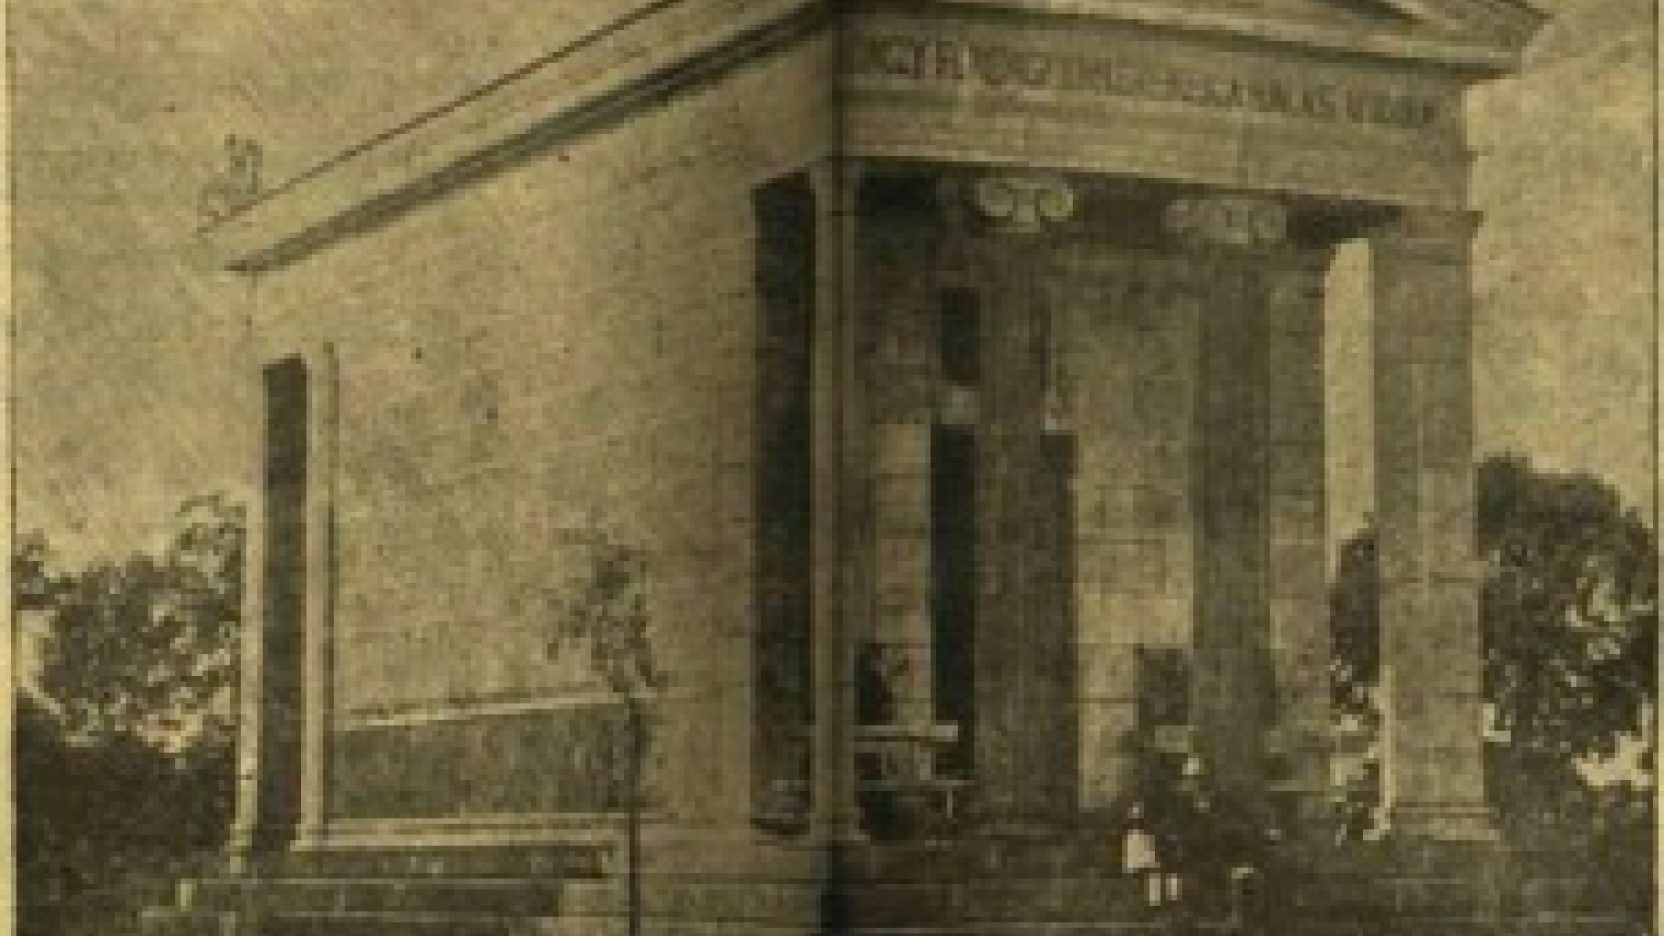 Az emlékcsarnok 1887-ben. Vasárnapi Ujság, 1887.